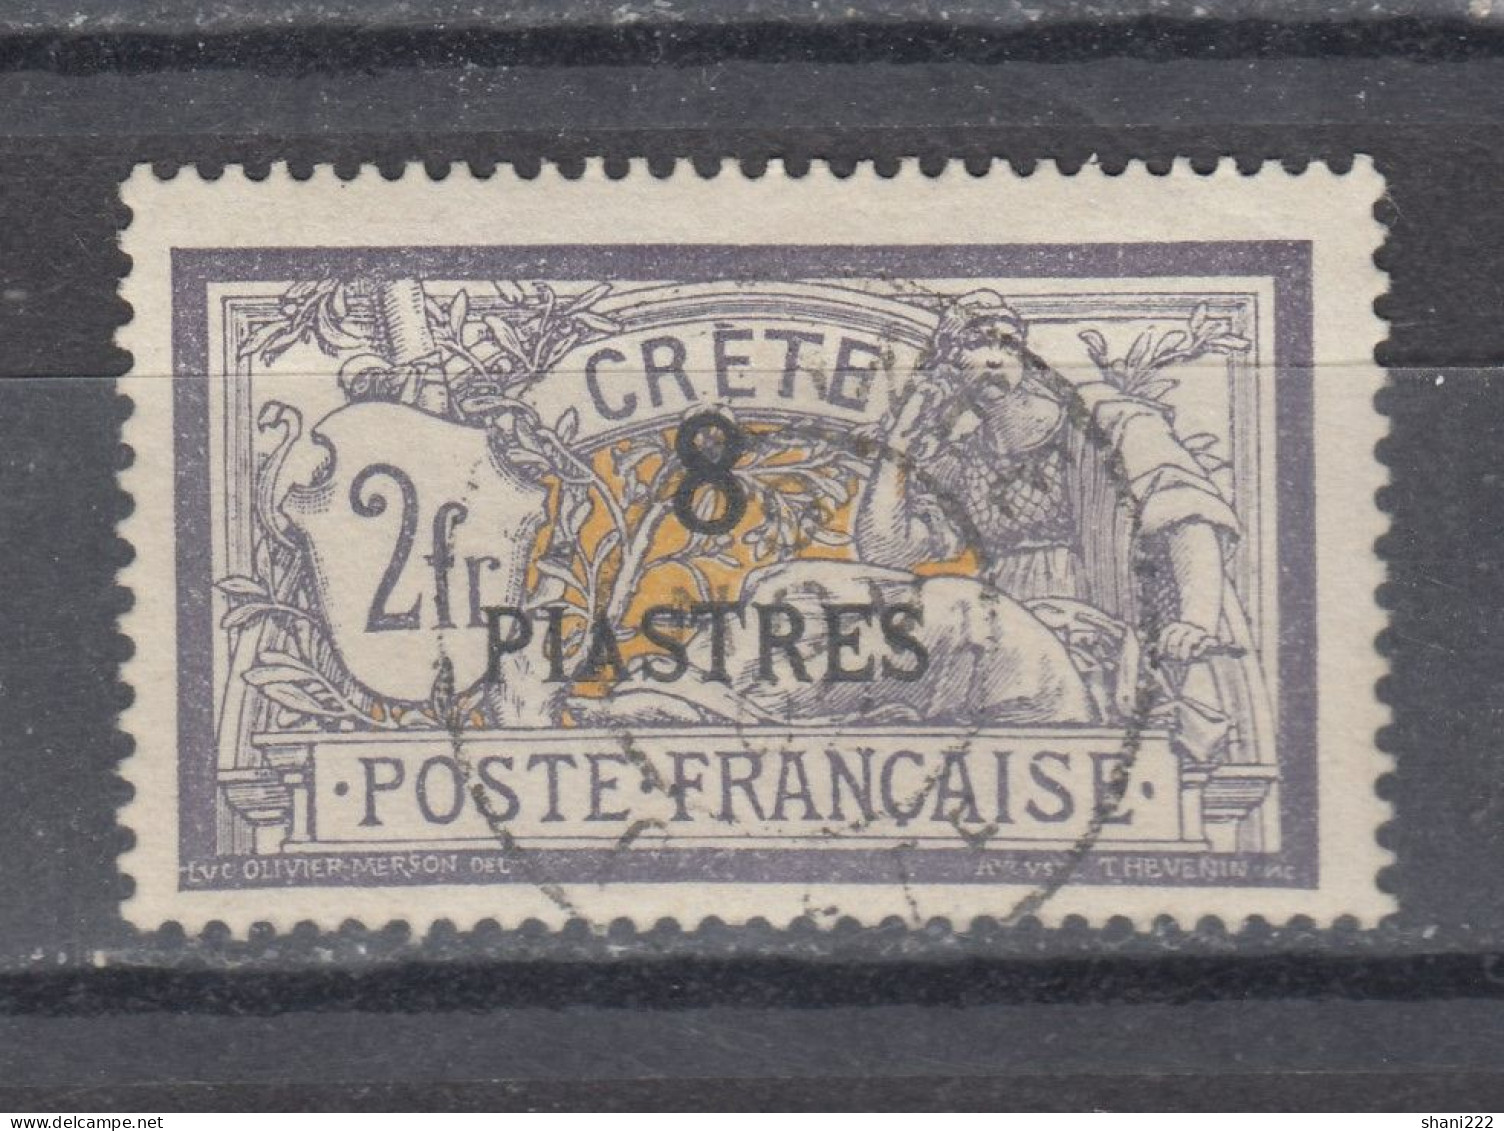 Crete 1903 - 8 Pt. Surcharge On 2 Fr. - Used (e-570) - Oblitérés